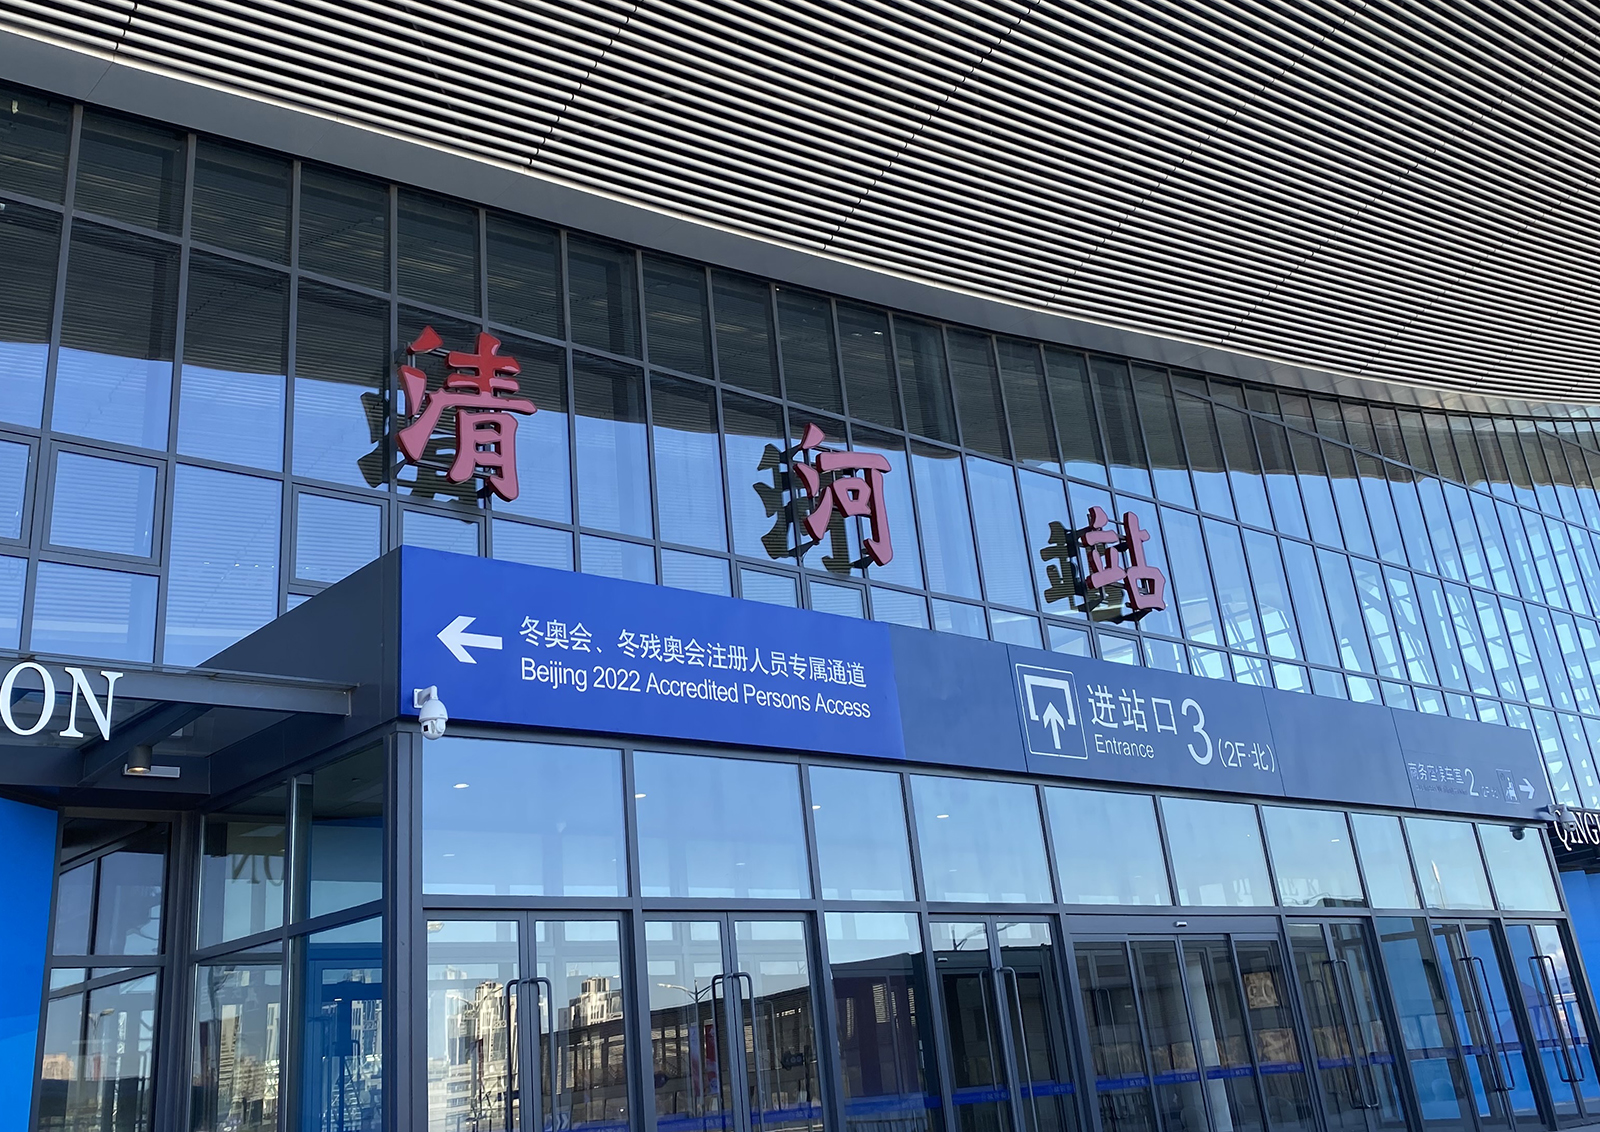 Qinghe Railway Station in Beijing.